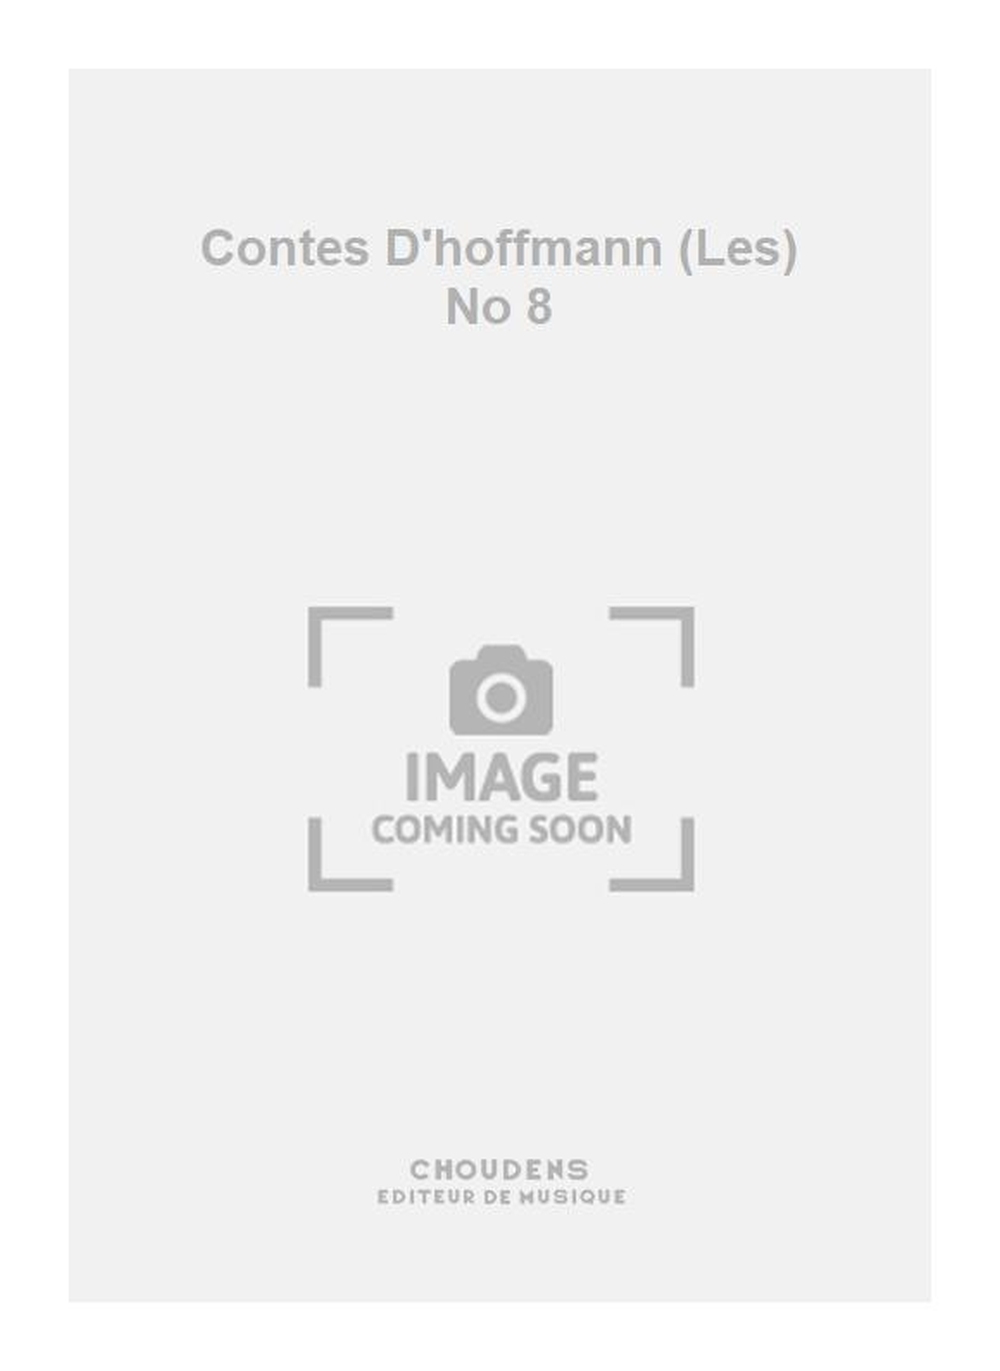 Jacques Offenbach: Contes D'hoffmann (Les) No 8